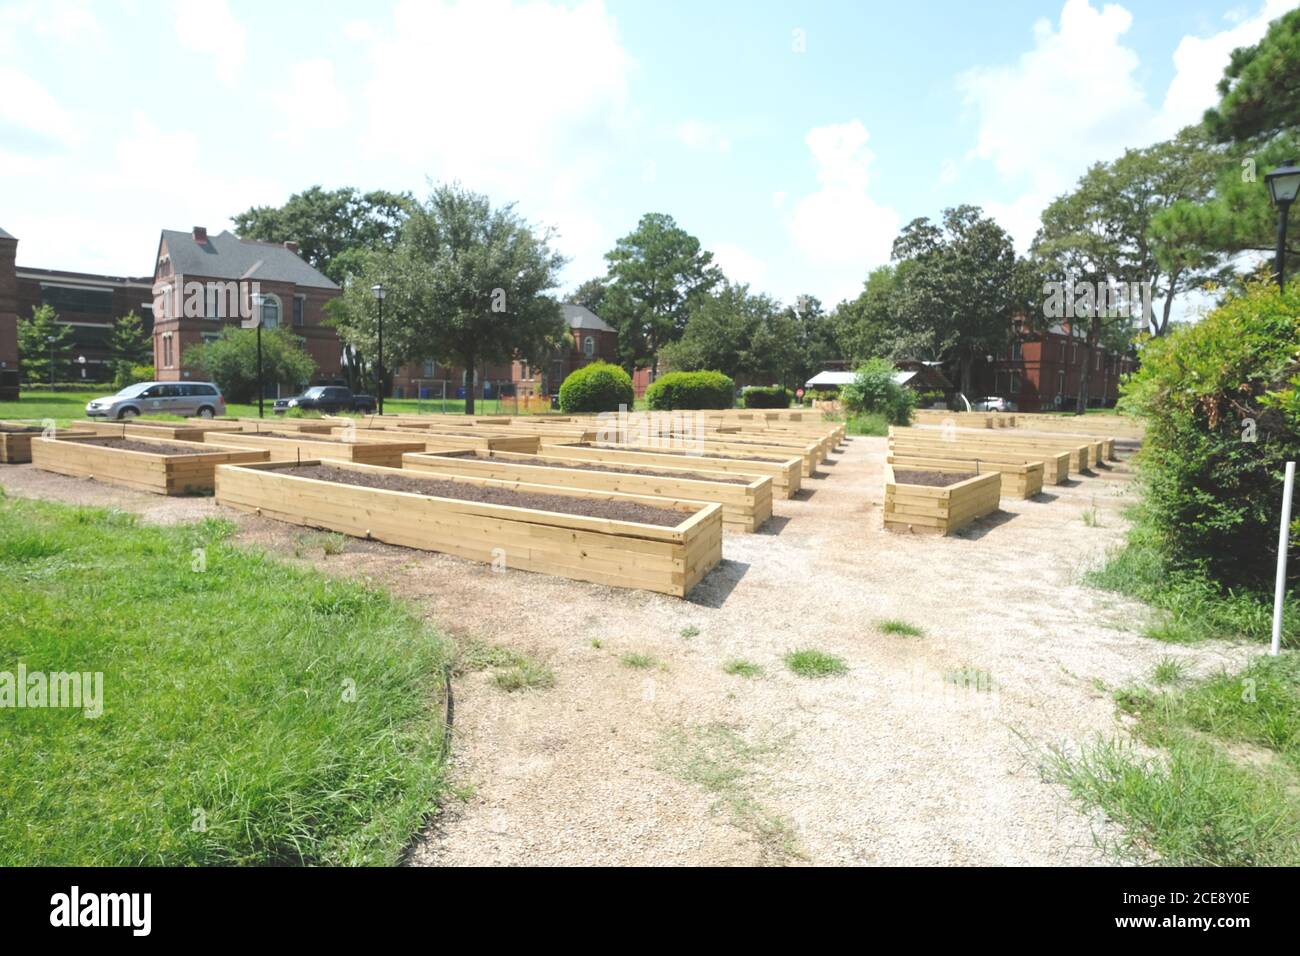 Nuovo Giardino Urbano in costruzione con piazzole di legno stabilite e terreno caricato, in attesa di piantare Foto Stock